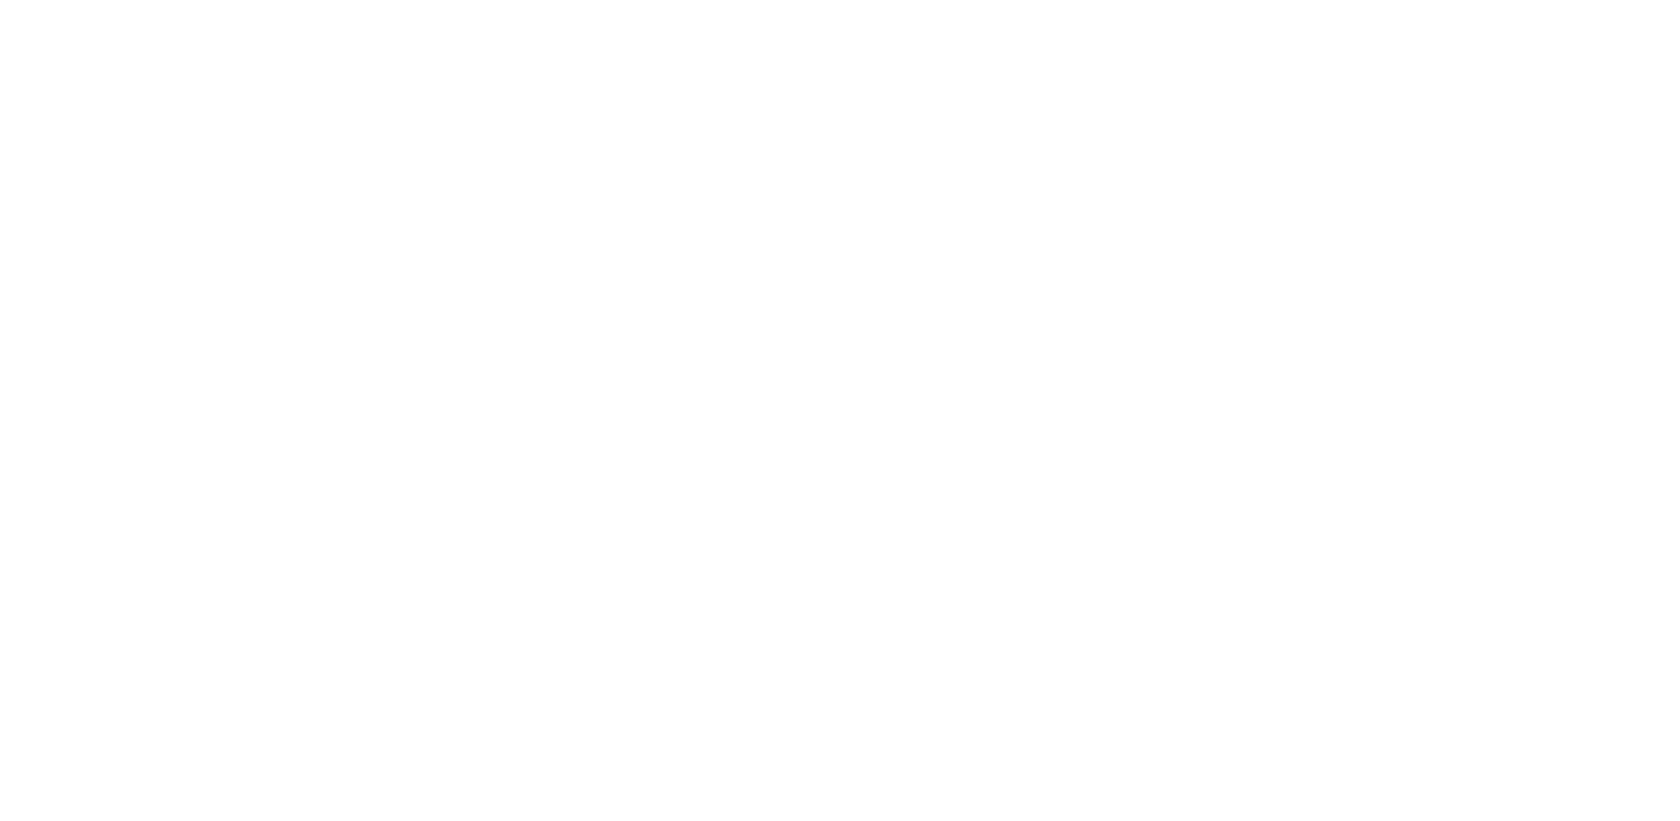 Кейс сервиса BRANDNATION - Фирменный стиль транспортно-логистической компании. Брендинговое агентство BRANDNATION в Москве и Санкт-Петербурге. Услуги: разработка логотипа и фирменного стиля, дизайн упаковки, брендбук, ребрендинг, разработка сайта.